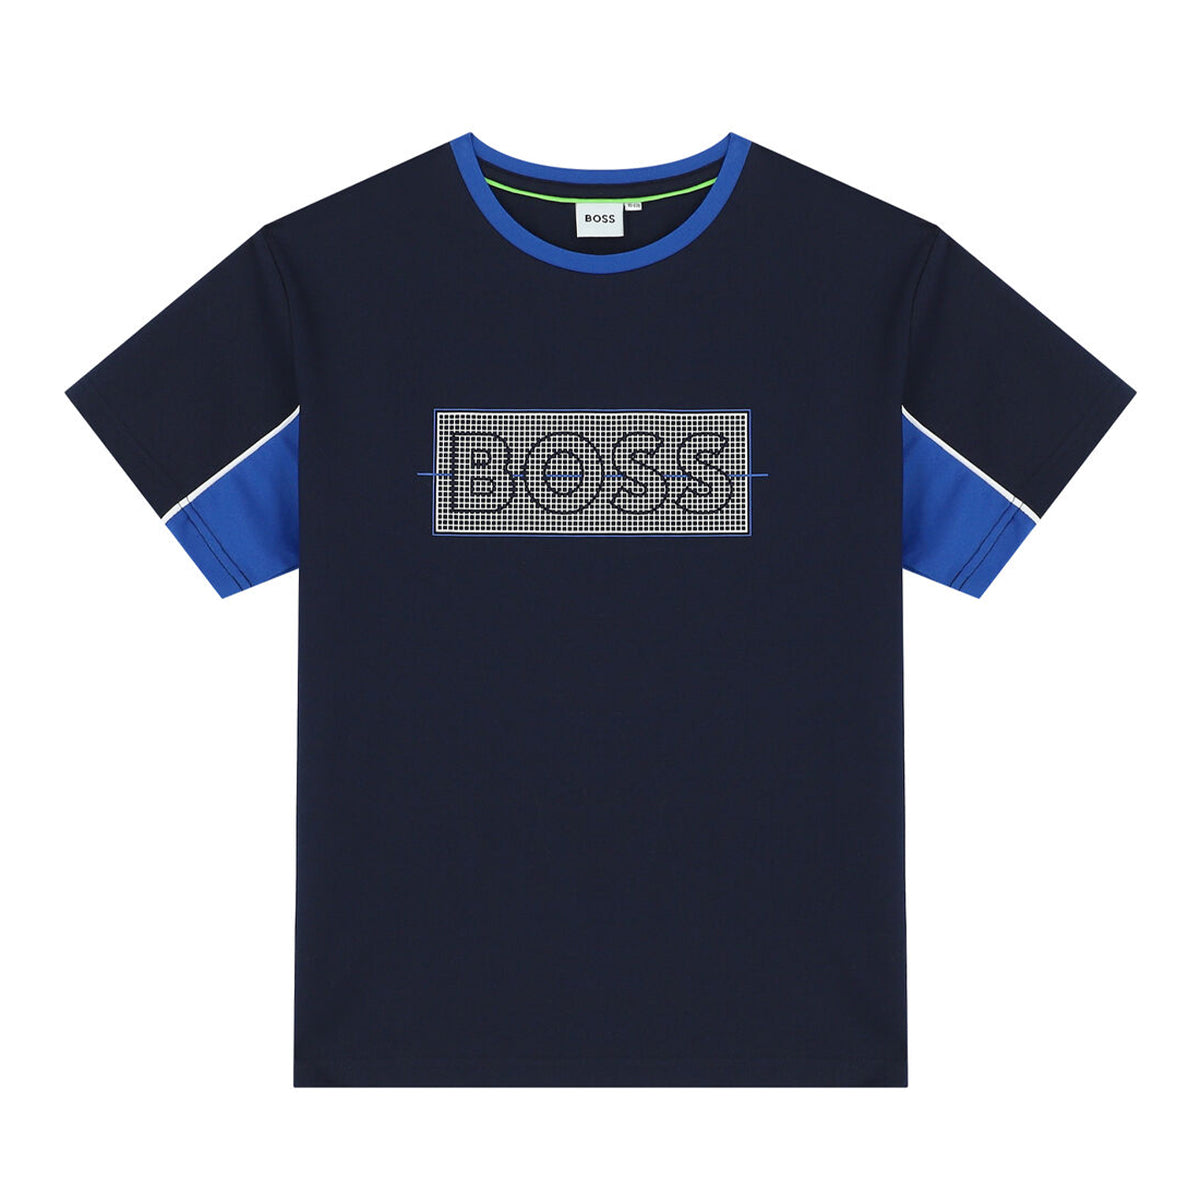 חולצת טי שרט BOSS לוגו משובץ לילדים